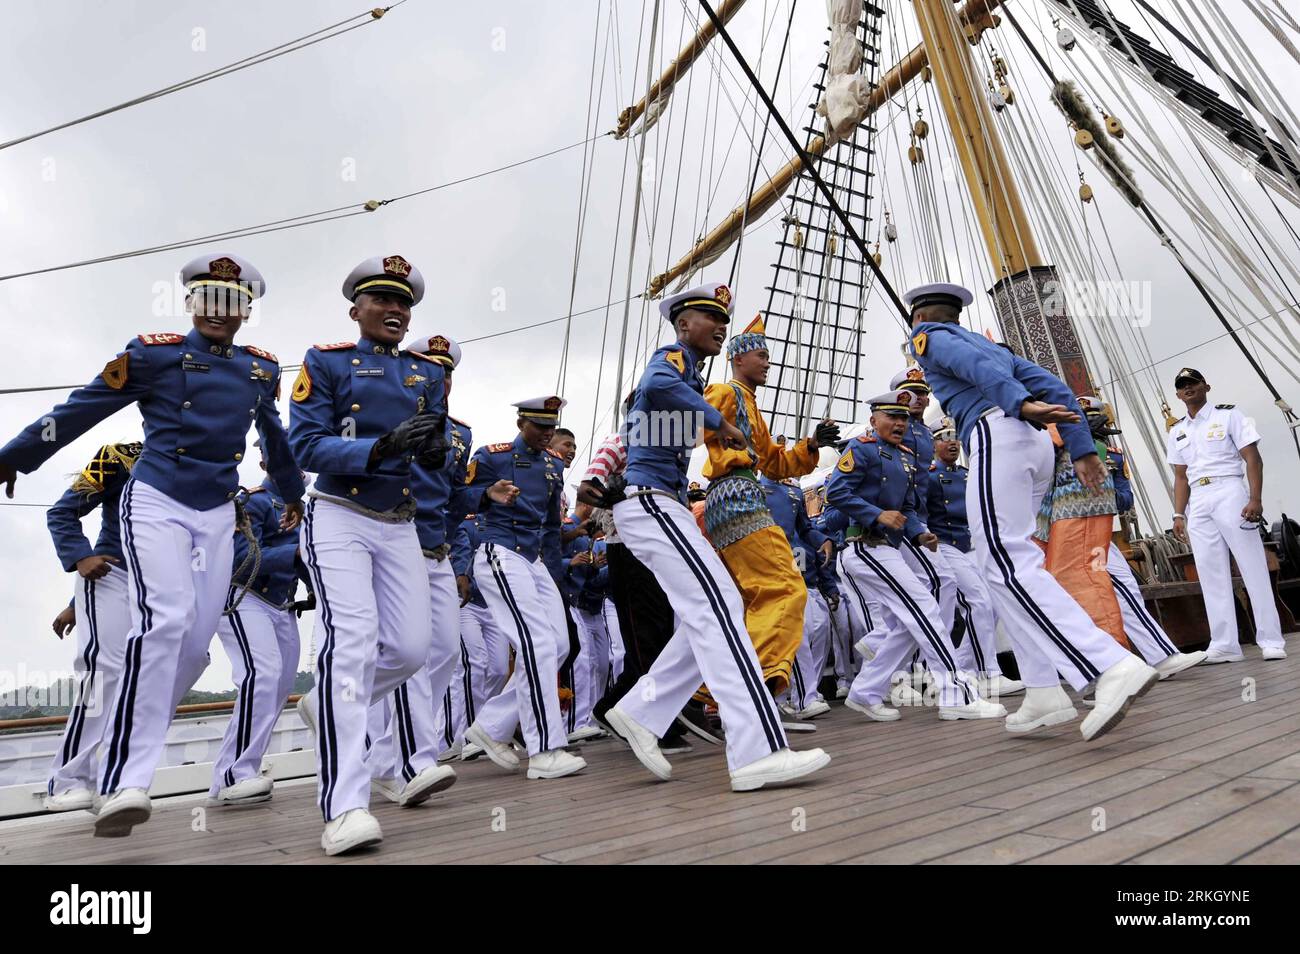 Bildnummer : 55648406 Datum : 30.07.2011 Copyright : imago/Xinhua (110730) -- GUANGZHOU, 30 juillet 2011 (Xinhua) -- officiers de marine et cadets du navire de la marine indonésienne Dewaruci effectue une danse alors que le navire arrive à Guangzhou, dans la province du Guangdong, dans le sud de la Chine, le 30 juillet 2011. Le KRI Dewaruci, un grand mât appartenant et exploité par la marine indonésienne, est arrivé ici samedi pour une visite de deux jours. Cette visite s'inscrit dans le cadre de la mission de bonne volonté de Dewaruci autour de l'Asie cette année. (Xinhua/Chen Yehua) (ljh) CHINA-GUANGZHOU-INDONESIAN NAVY VESSEL-VISIT (CN) PUBLICATIONxNOTxINxCHN Gesellschaft Militär Marine S. Banque D'Images